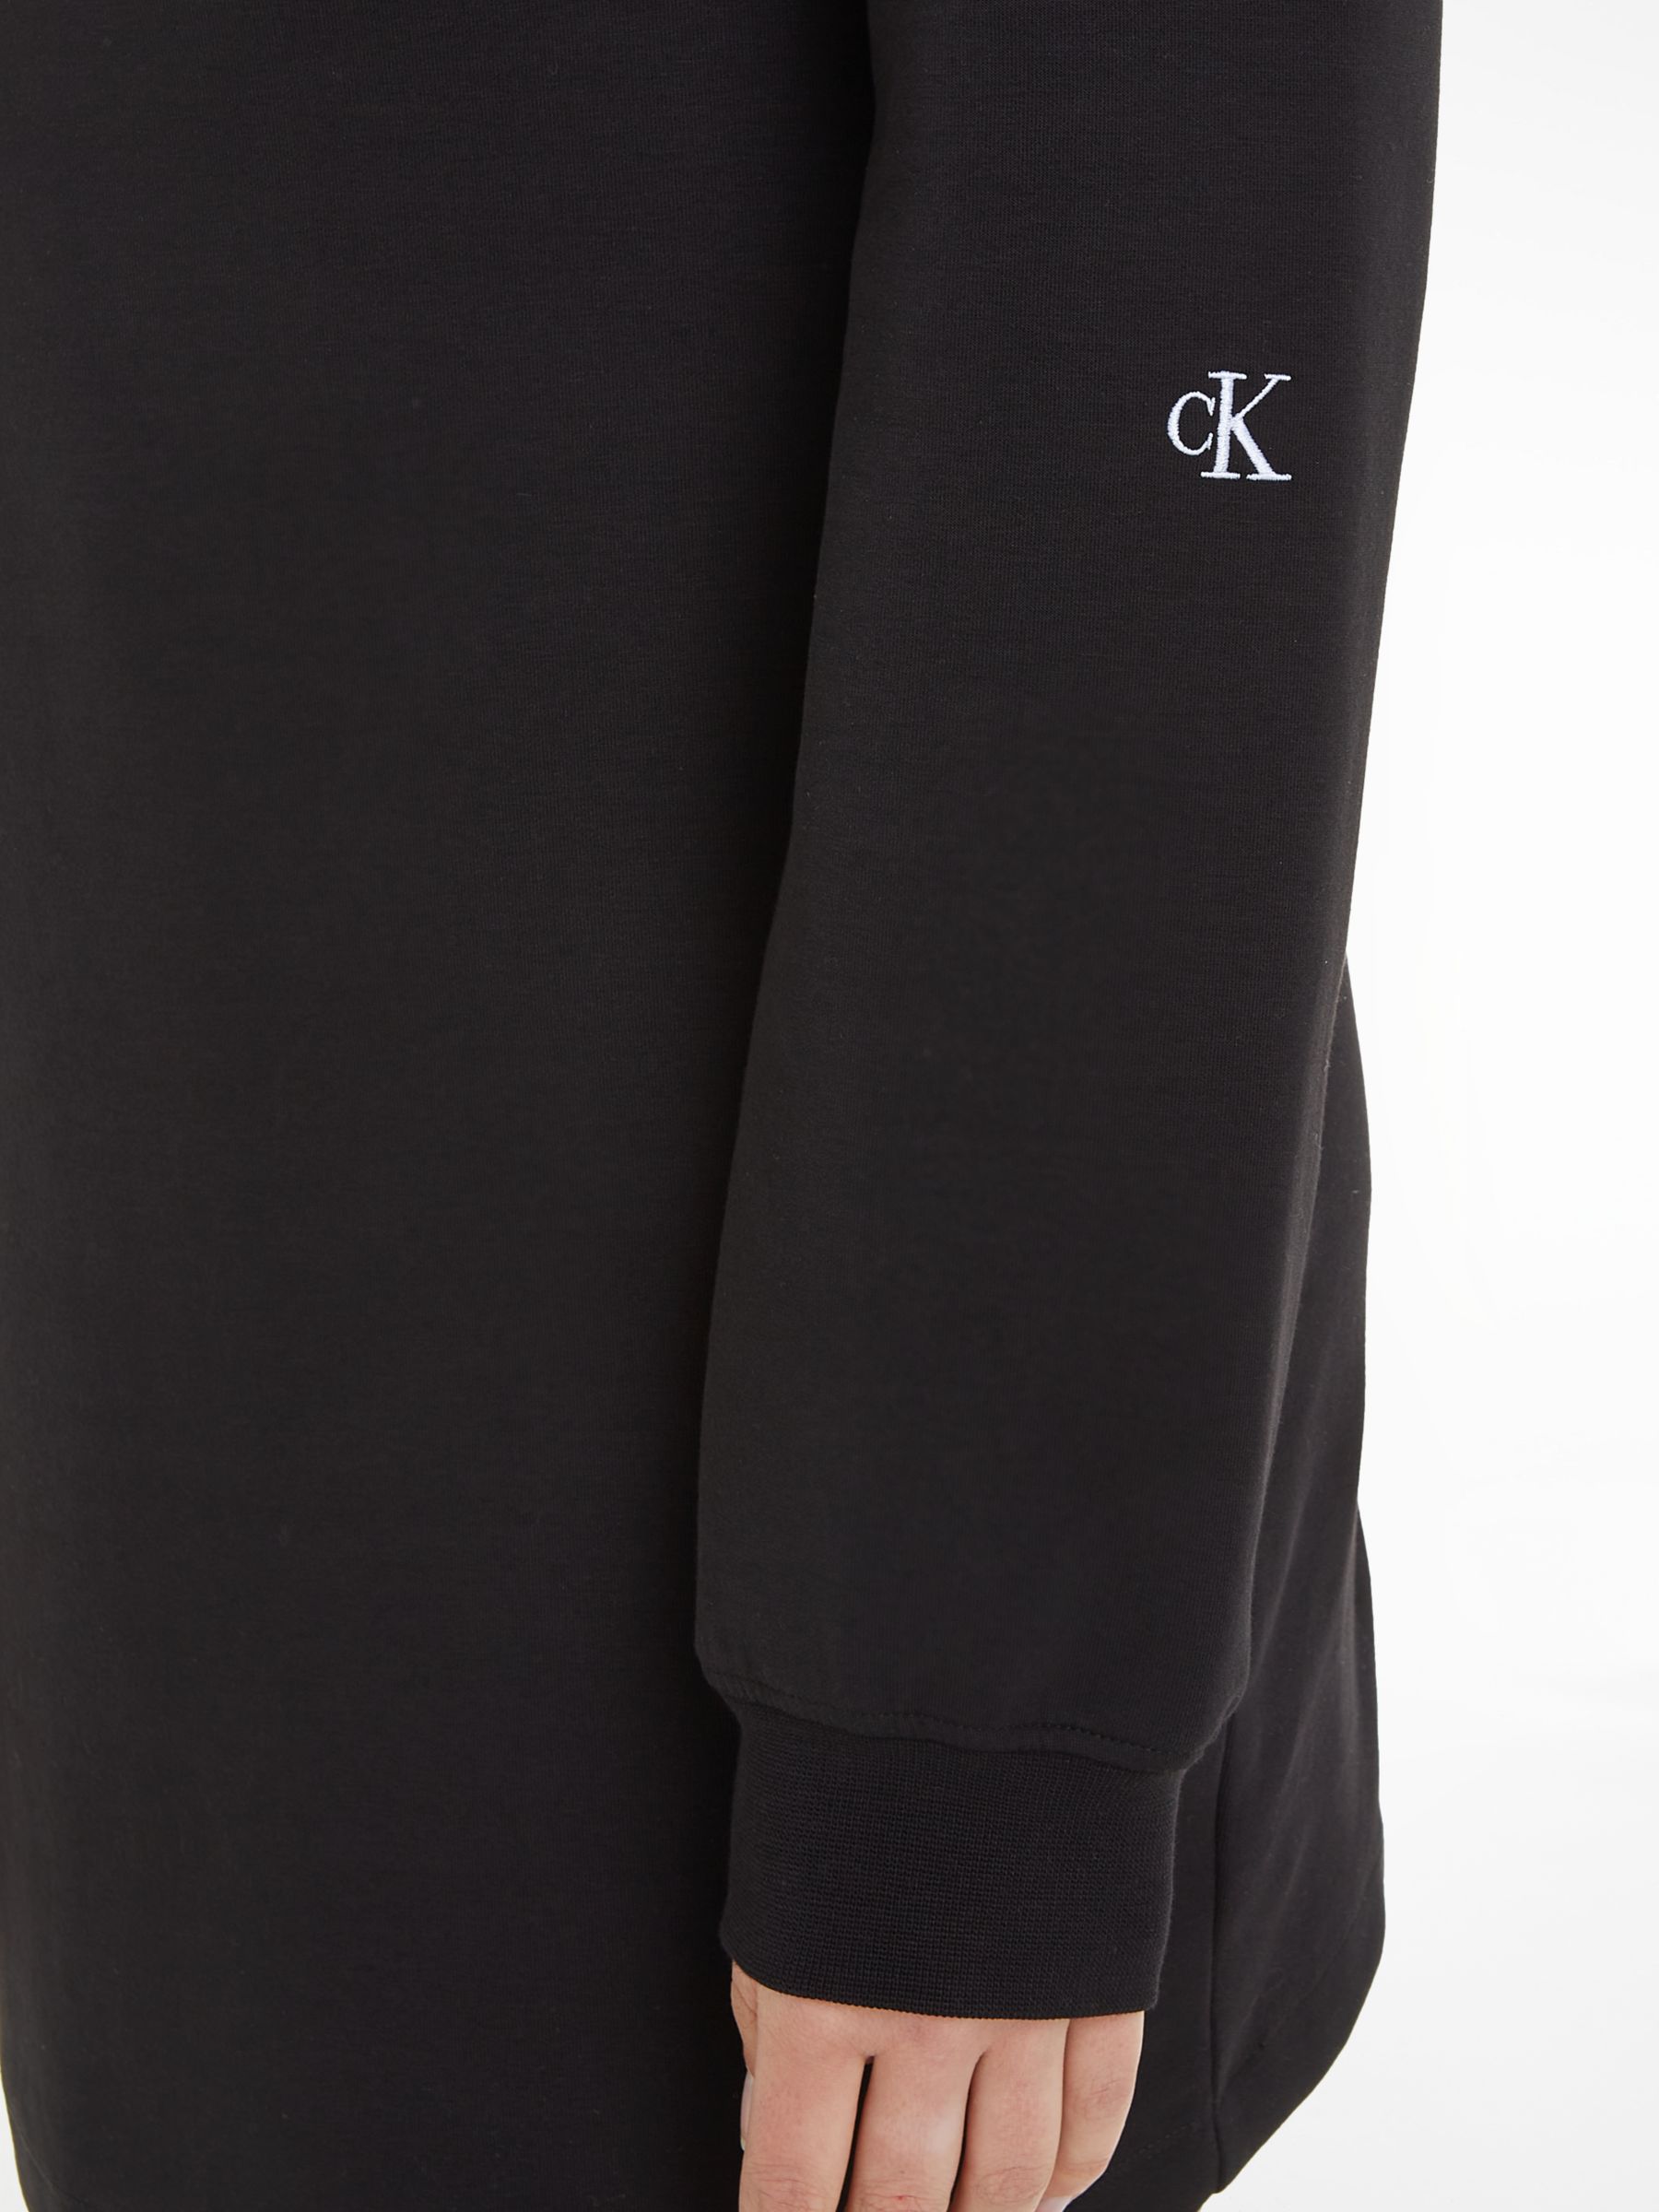 Calvin Klein Wrap Sweater Dress, Black, L